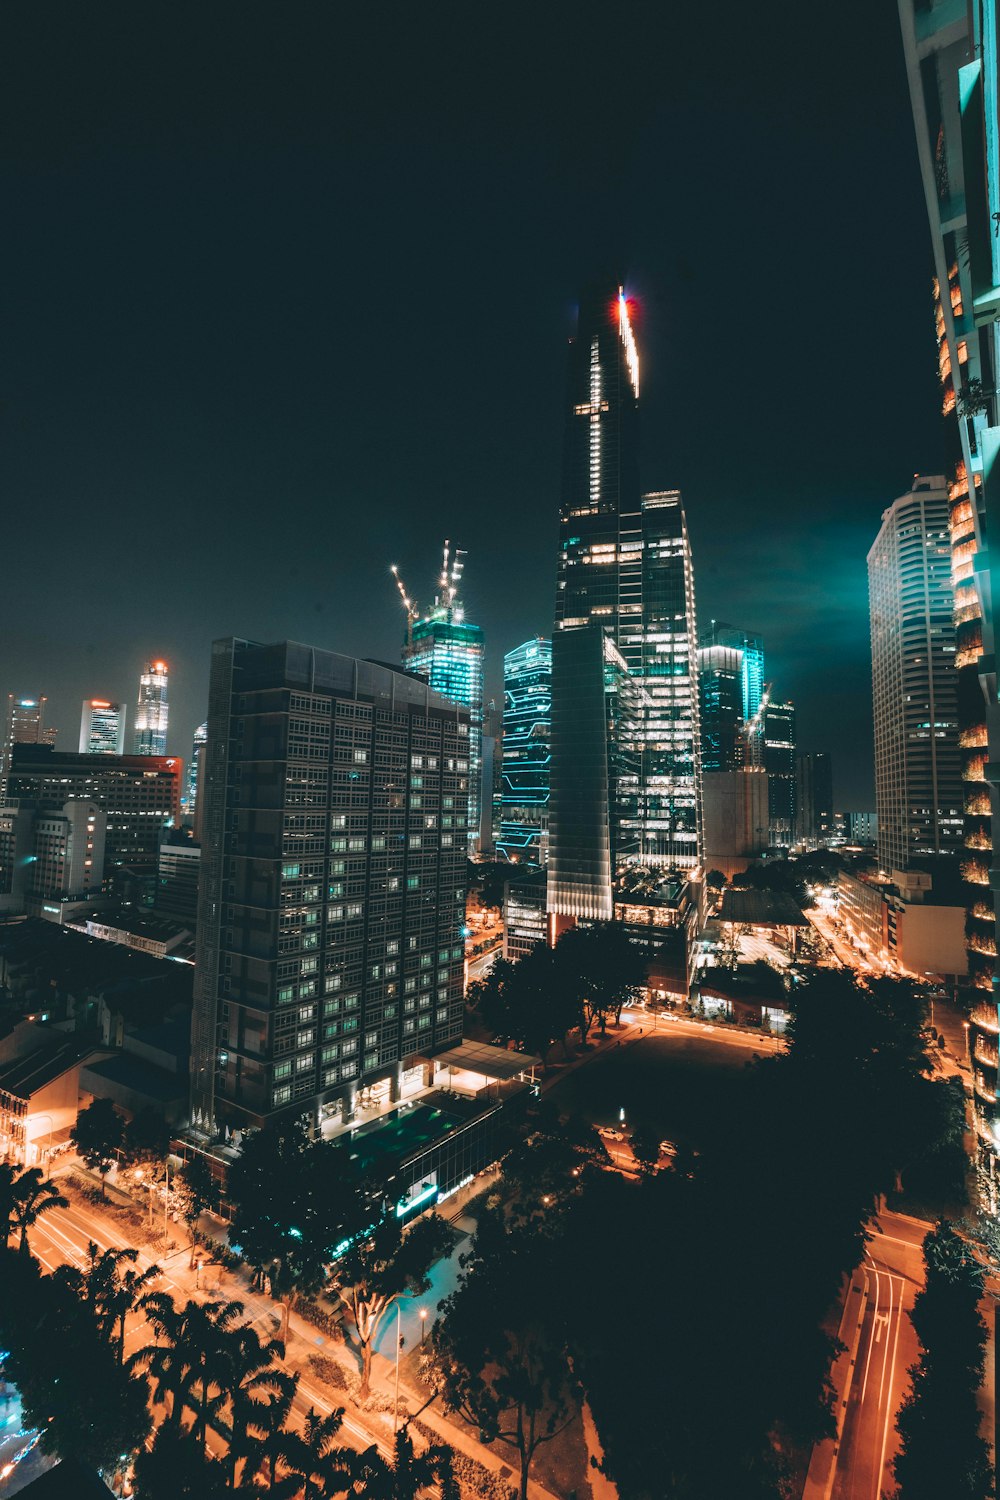 foto de arranha-céus iluminados na cidade durante a noite